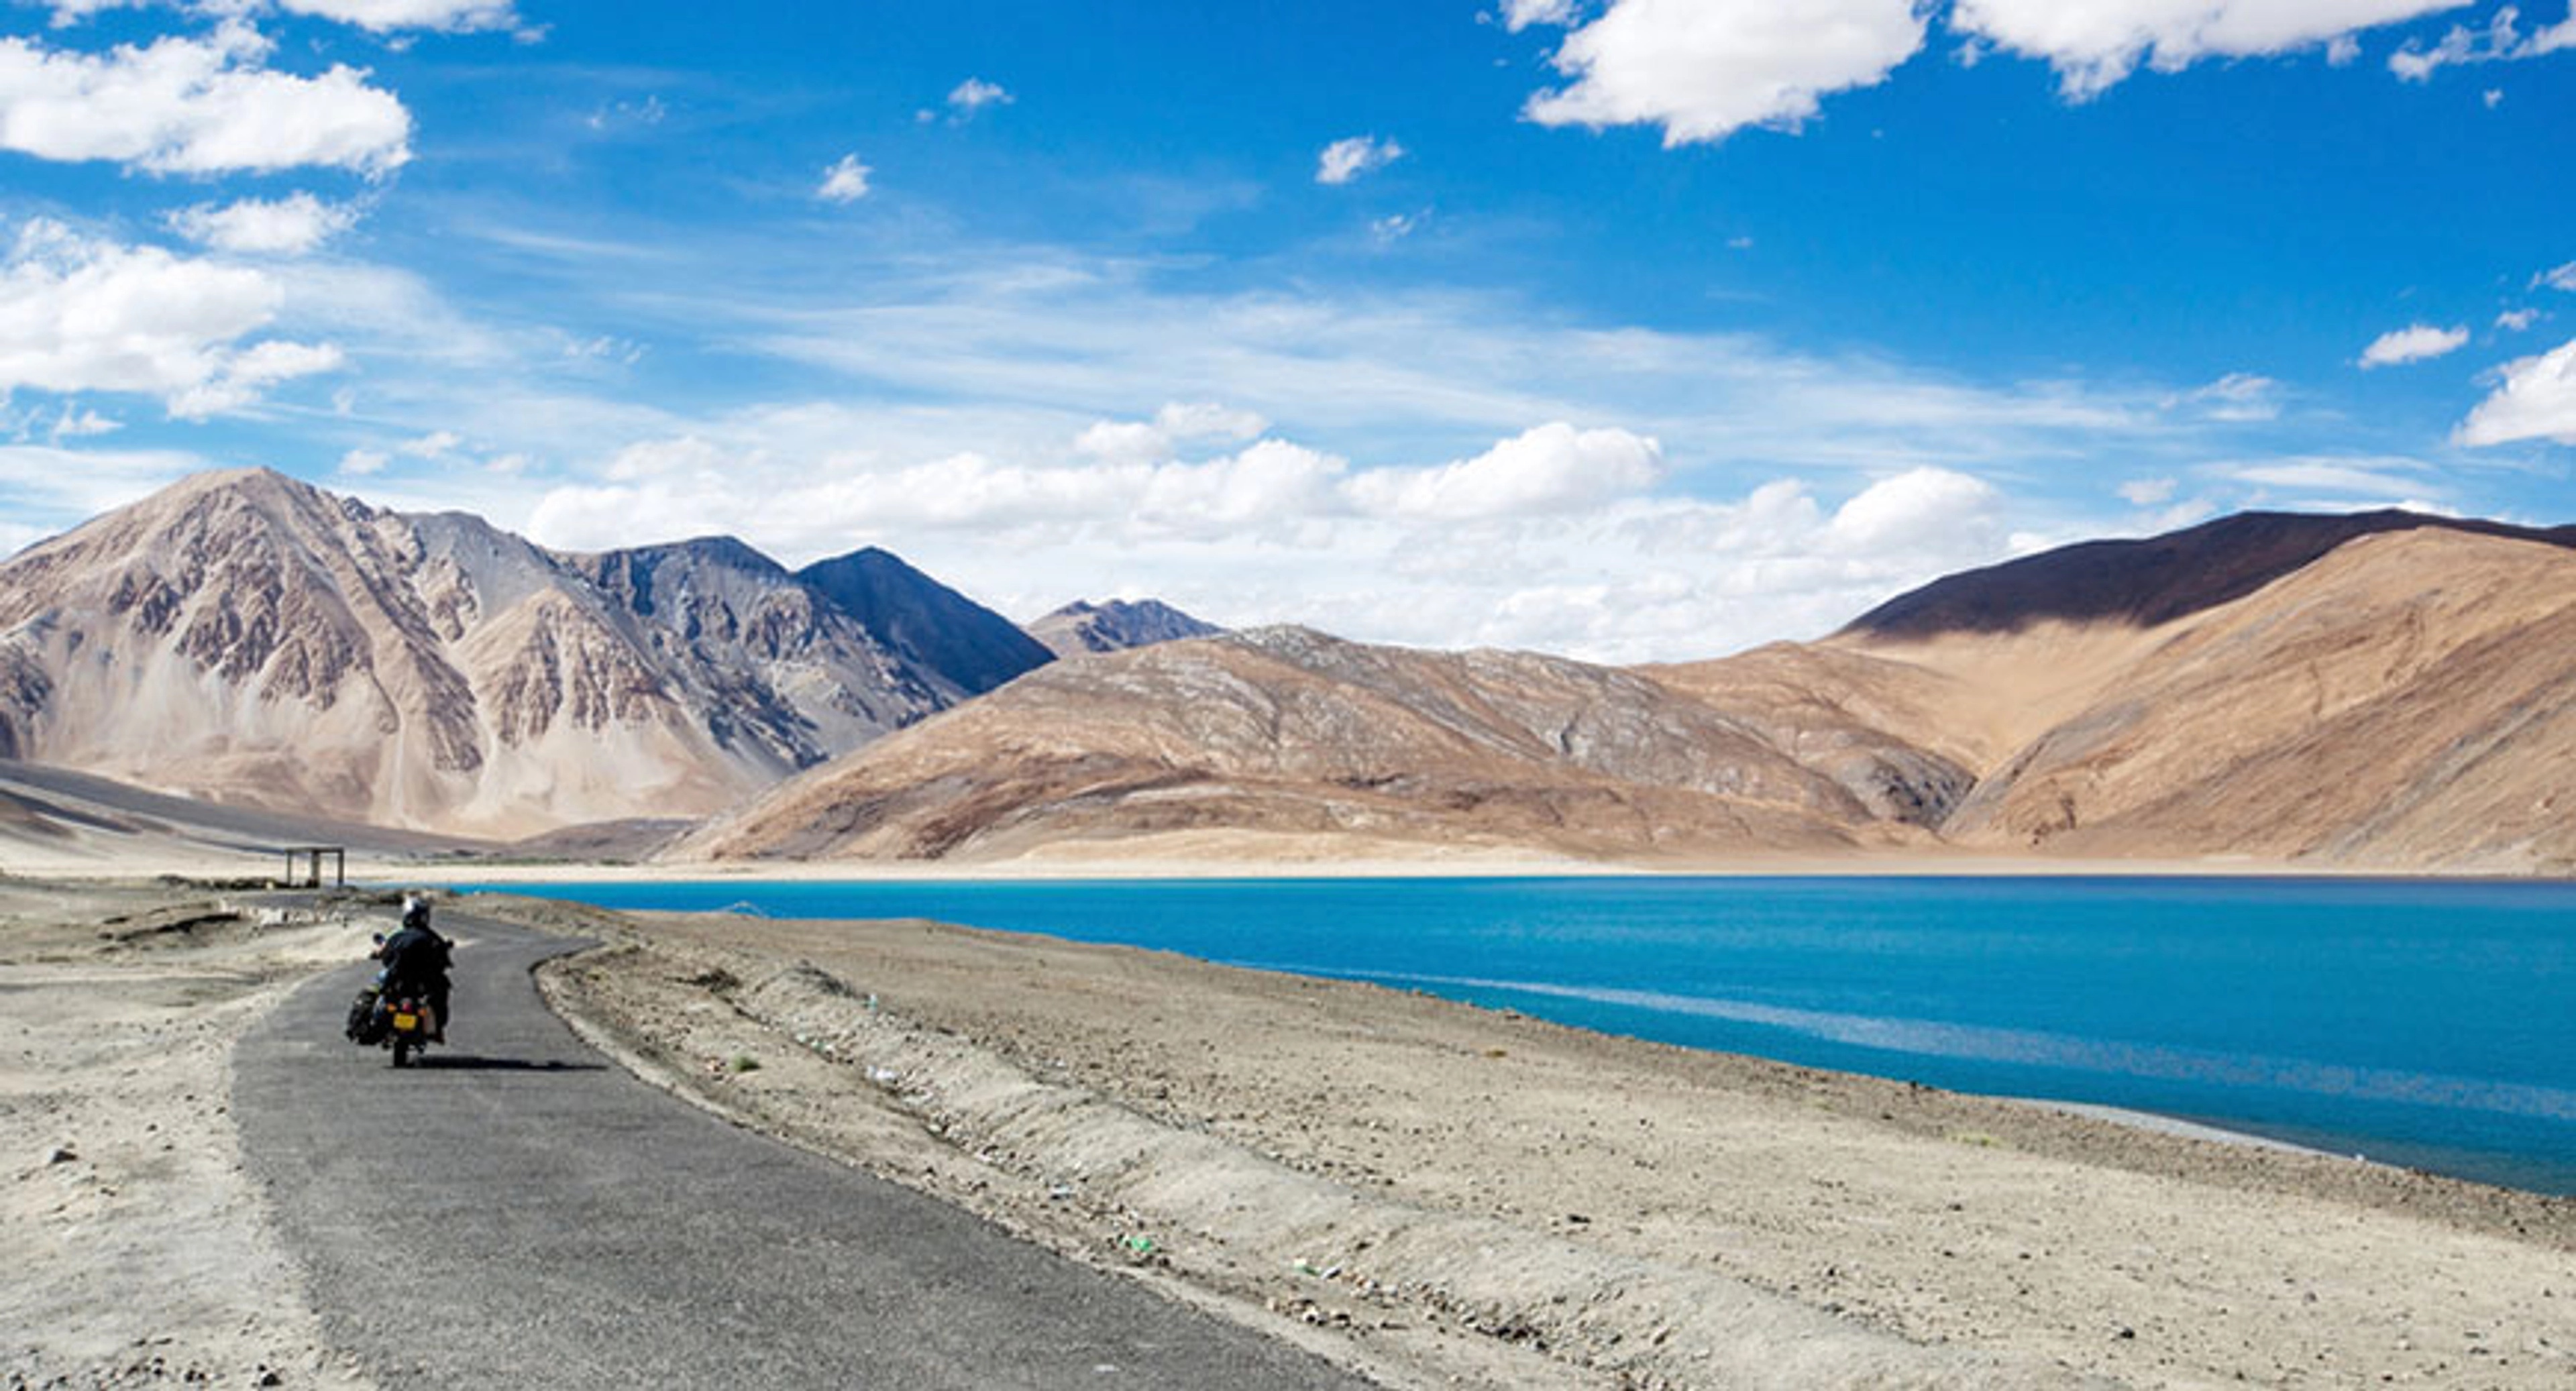 Khám phá Ladakh "Tiểu Tây Tạng" của Ấn Độ